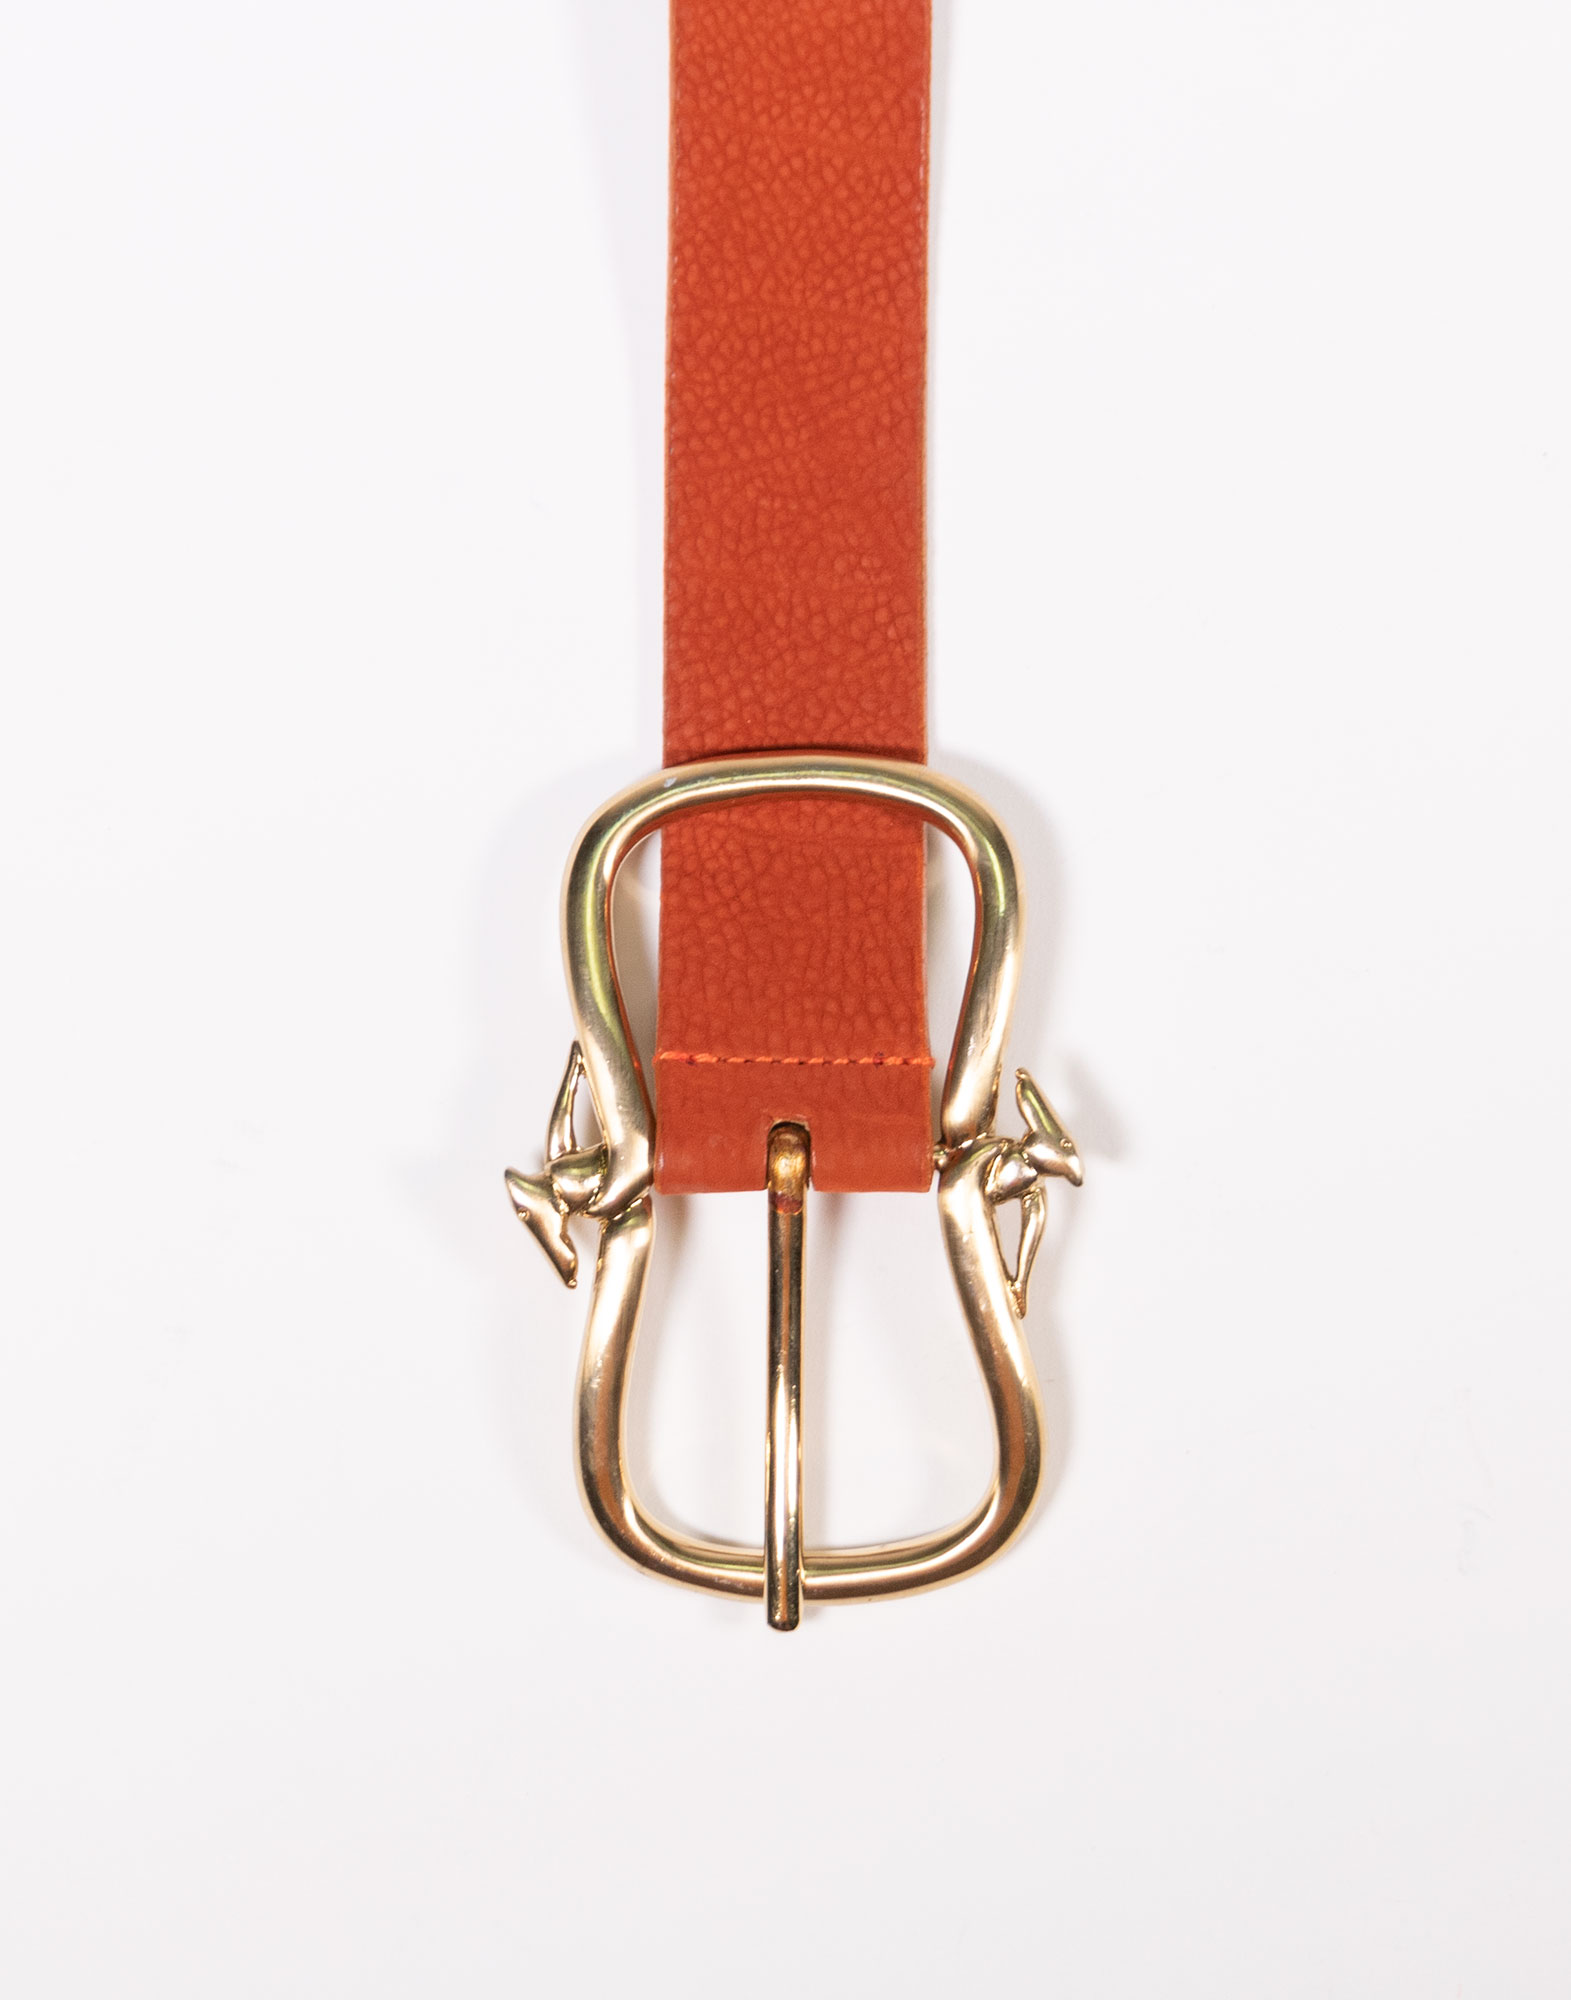 Trussardi - 80s leather belt